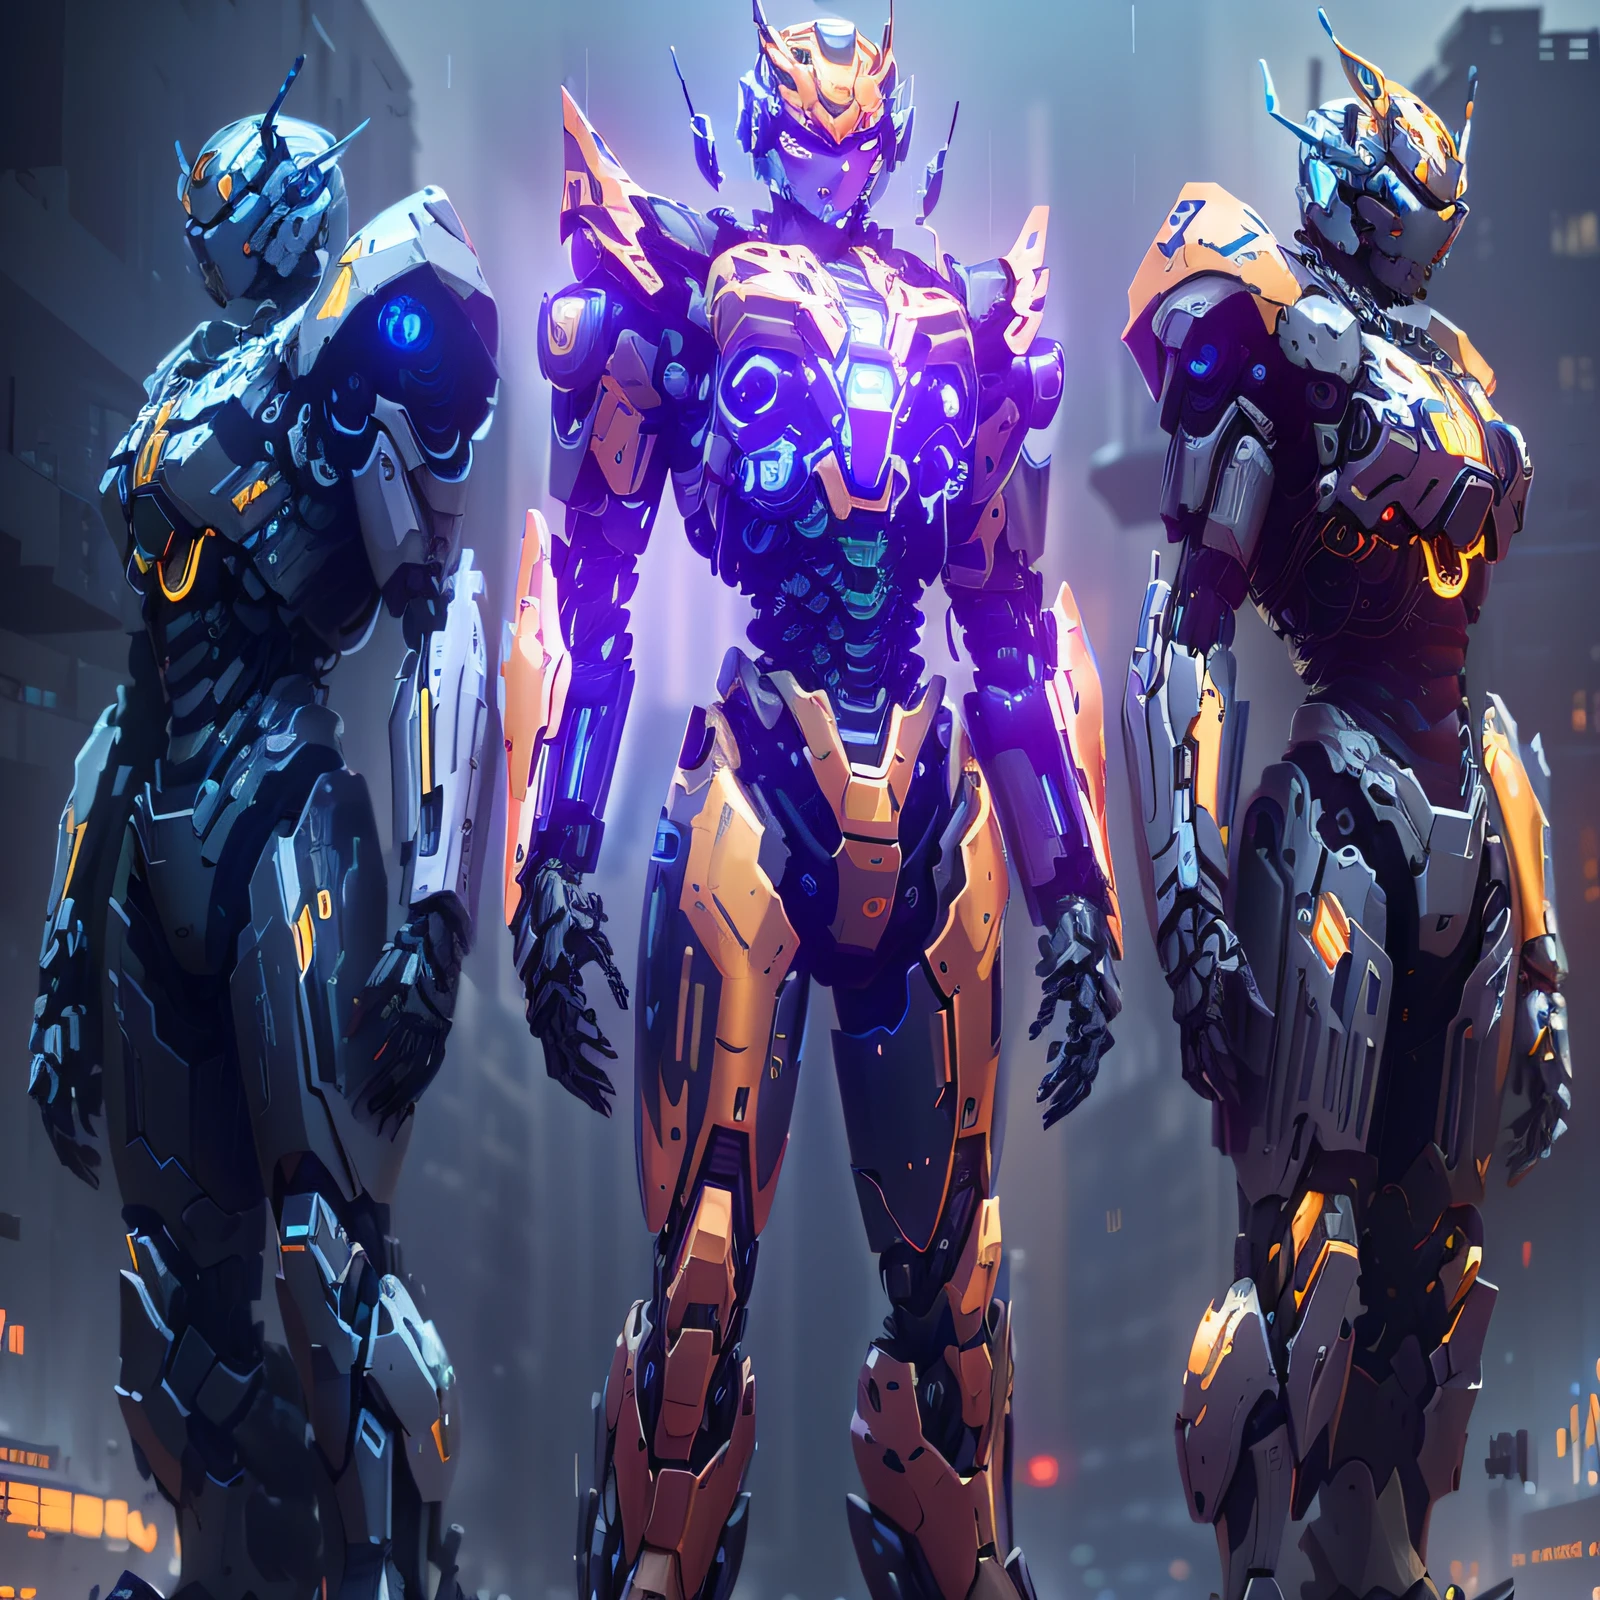 drei Roboter in einer Reihe mit einer Stadt im Hintergrund, Mecha-Anzug, intricate glowing Mecha-Rüstung, Mecha-Rüstung, full body Mecha-Anzug, Hartoberflächenpanzerung, Mech-Anzug, cooler Mecha-Stil, Cyber-Kampf-Rüstung, Mech-Konzeptkunst, intricate assasin Mecha-Rüstung, Cyber-Anzug, intricate Mecha-Rüstung, Anime-Mech-Rüstung, Inspiration für das Anthem-Spiel